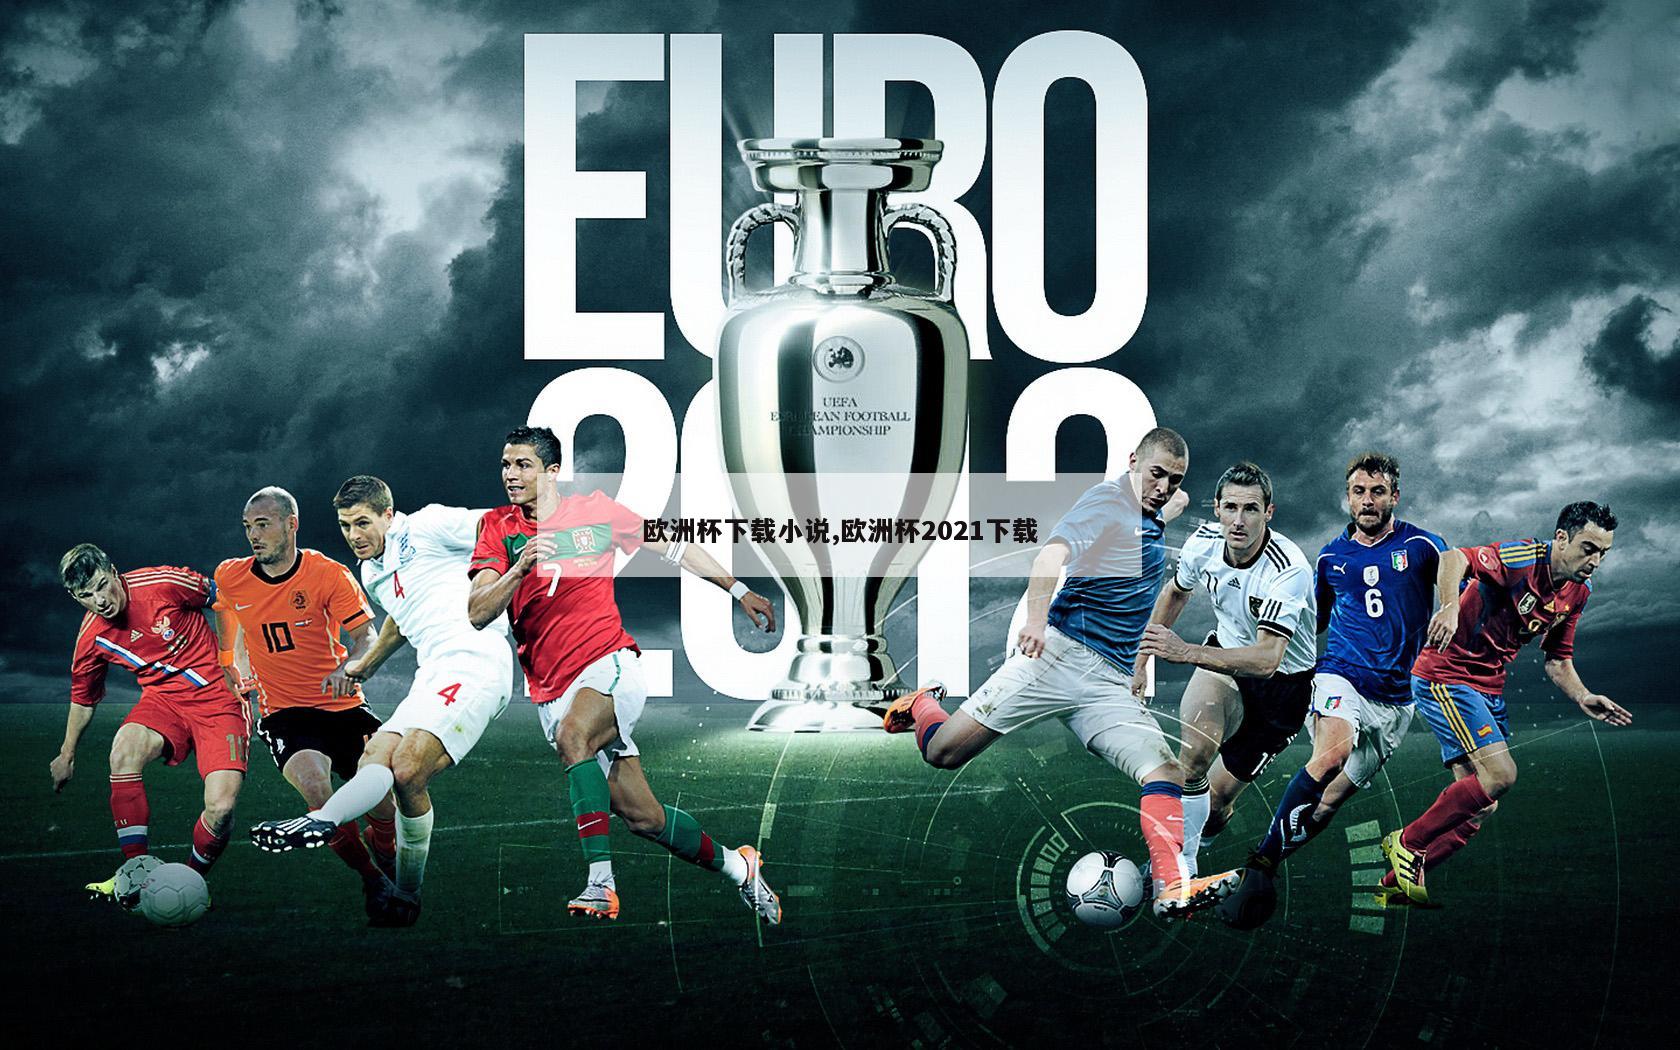 欧洲杯下载小说,欧洲杯2021下载